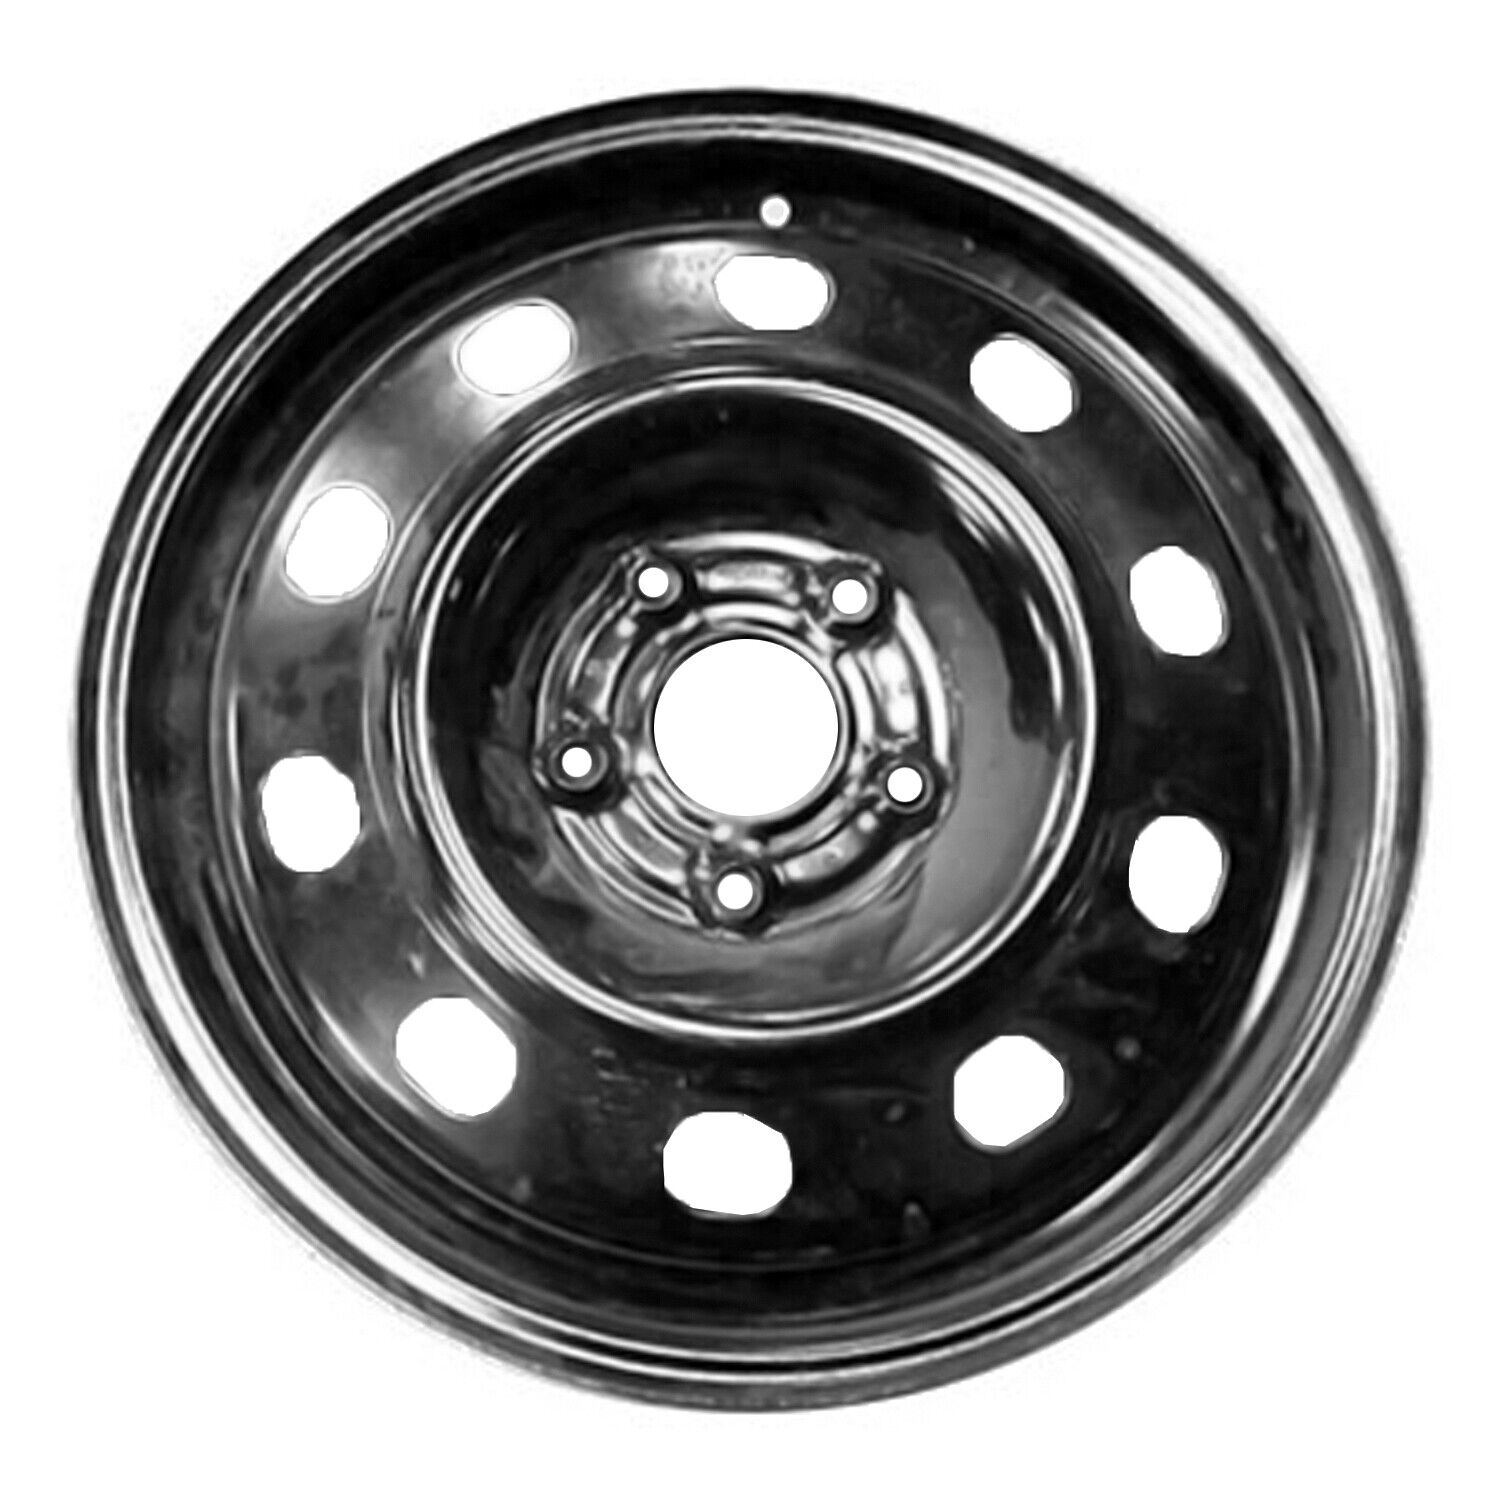 02485 New Replacement 17x6.5 Black Steel Wheel Fits 2014-2020 Dodge Caravan